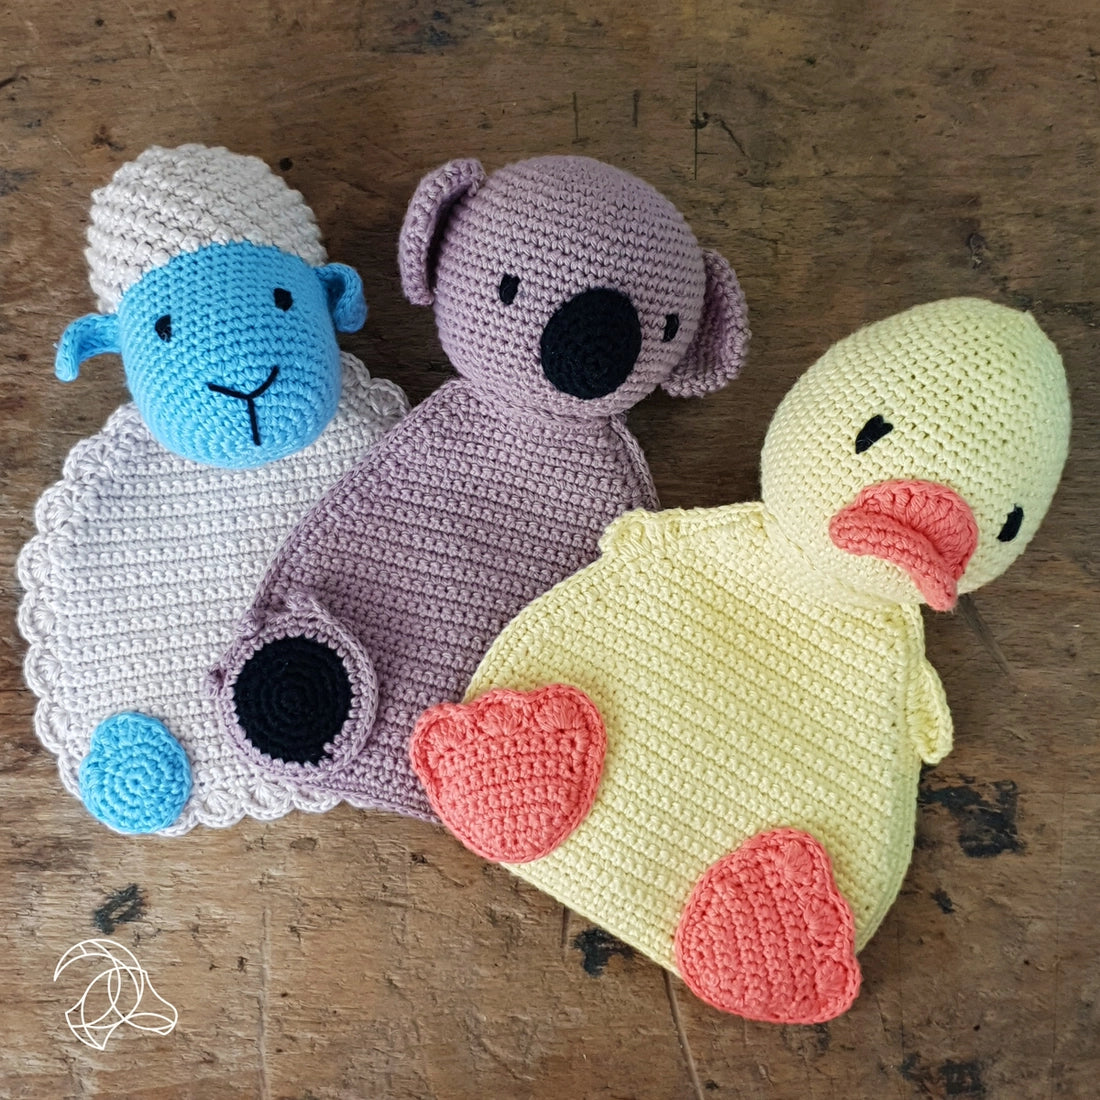 Little Lamb Blanket Crochet Kit